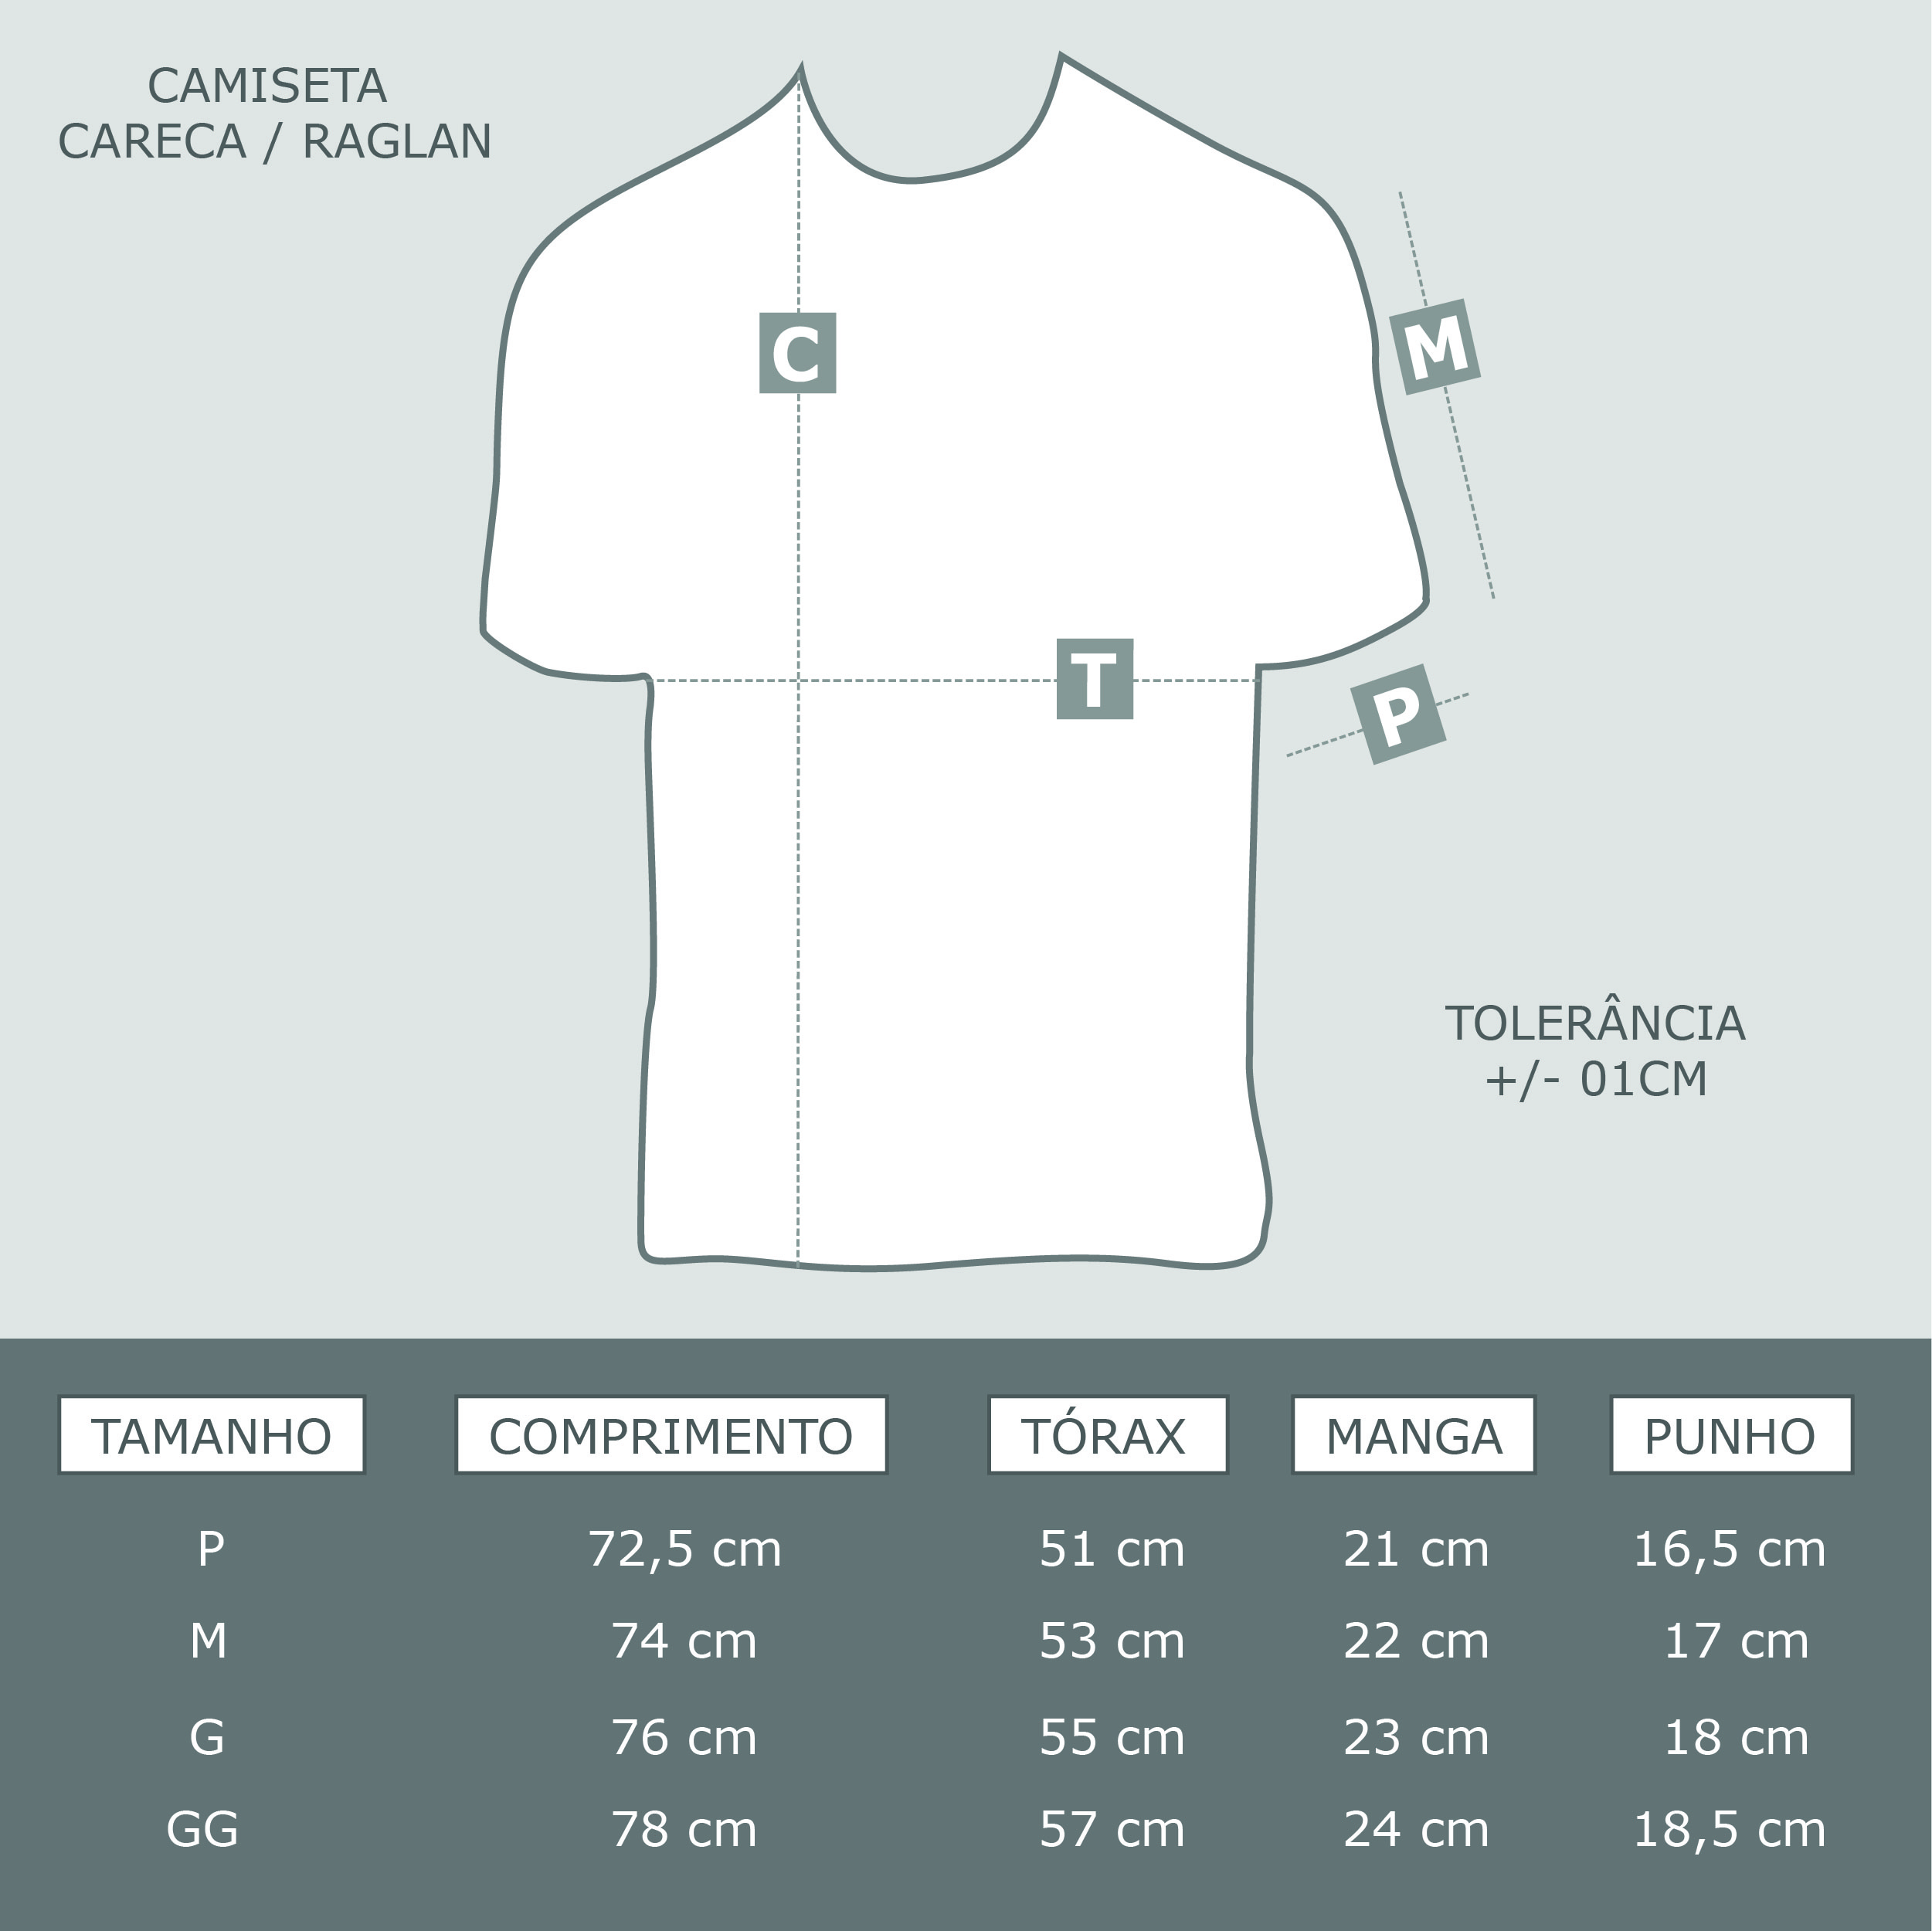 Tabela de Medidas Camiseta Careca e Raglan v3